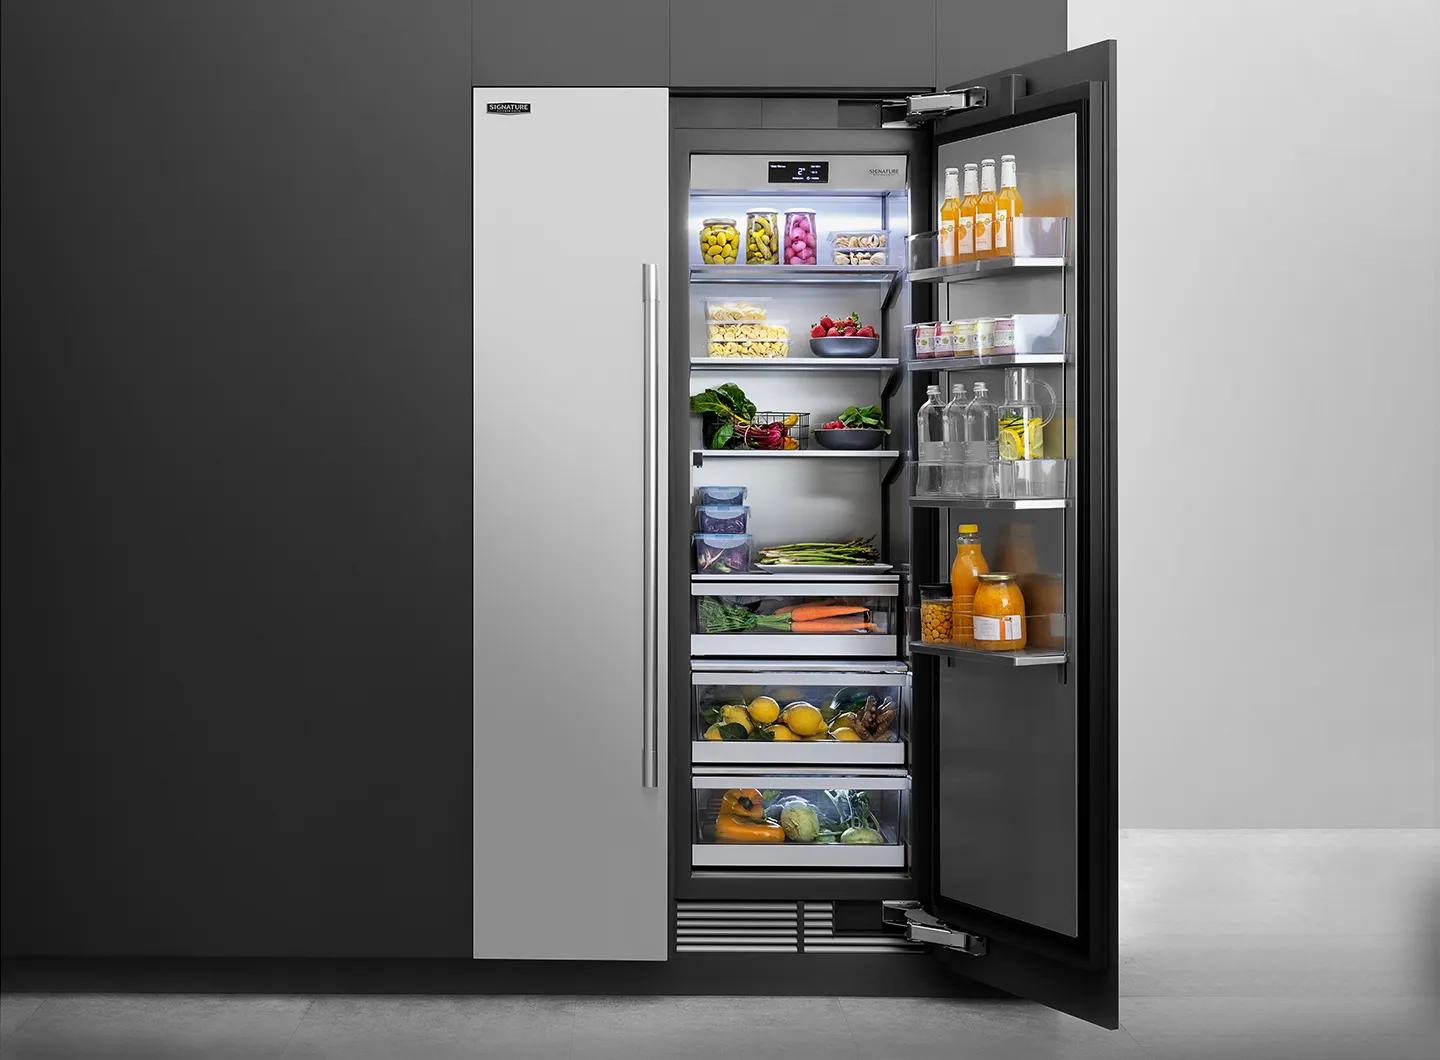 30” Integrated refrigerator